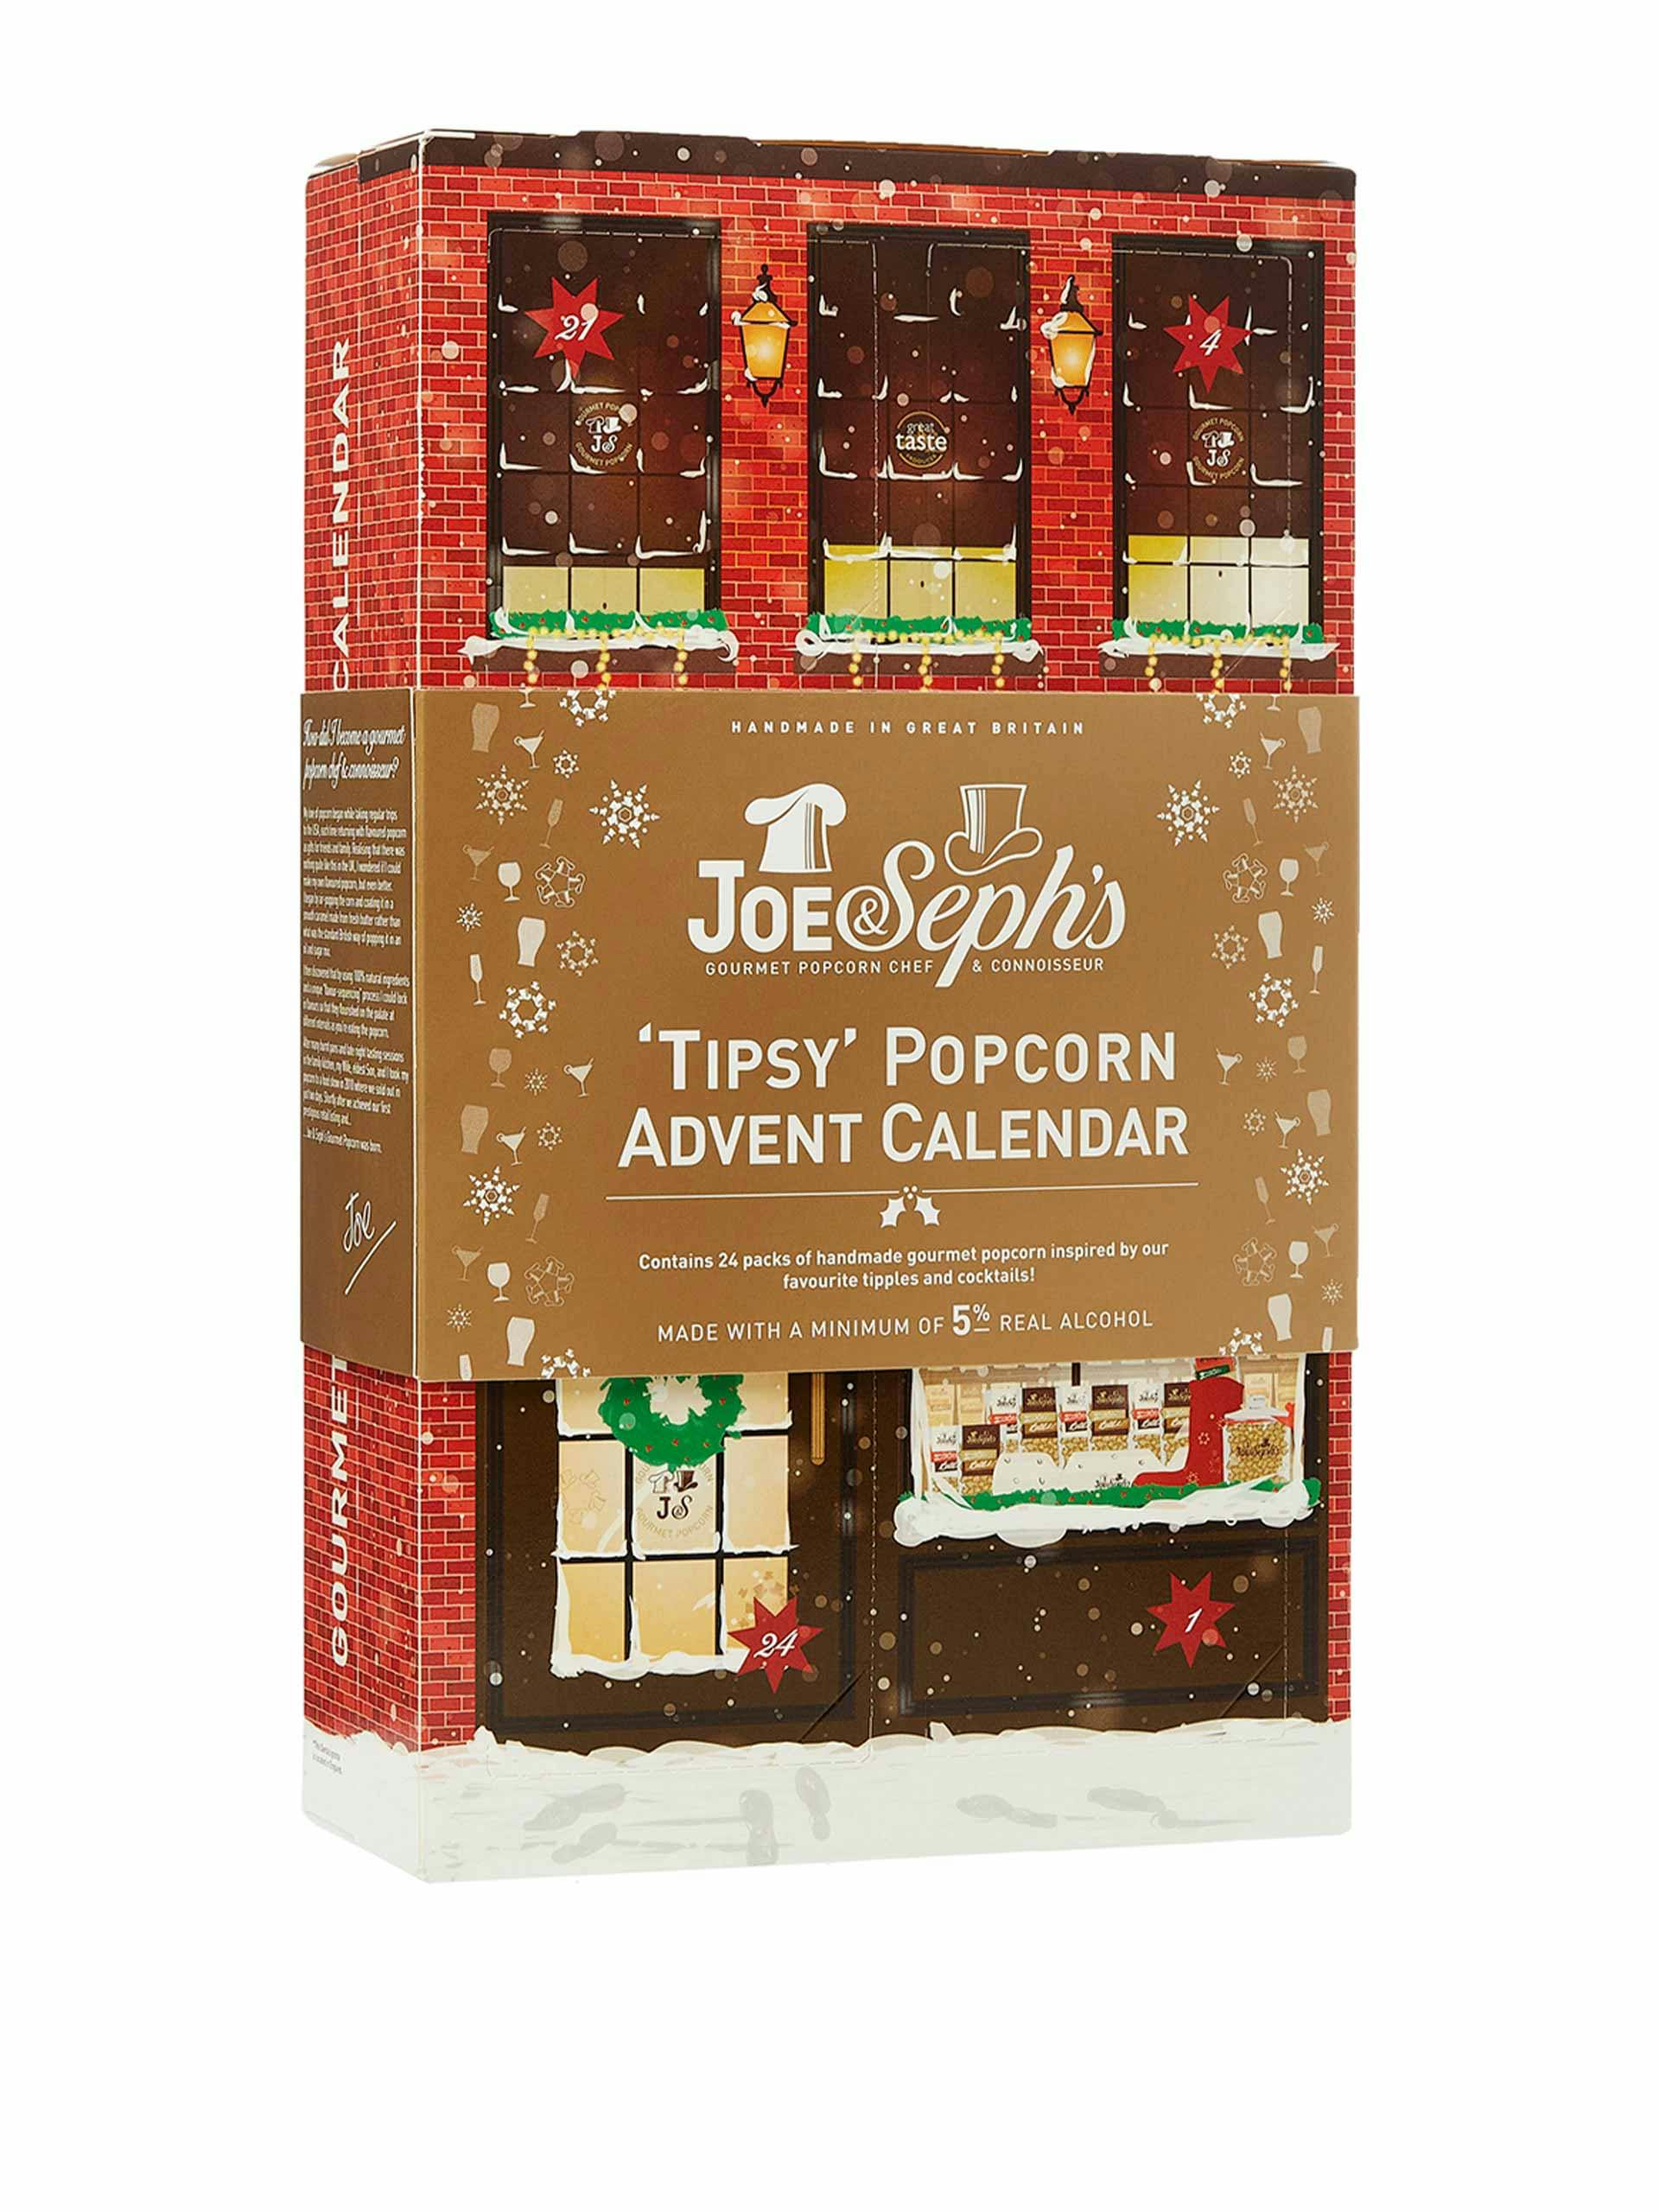 Tipsy popcorn advent calendar